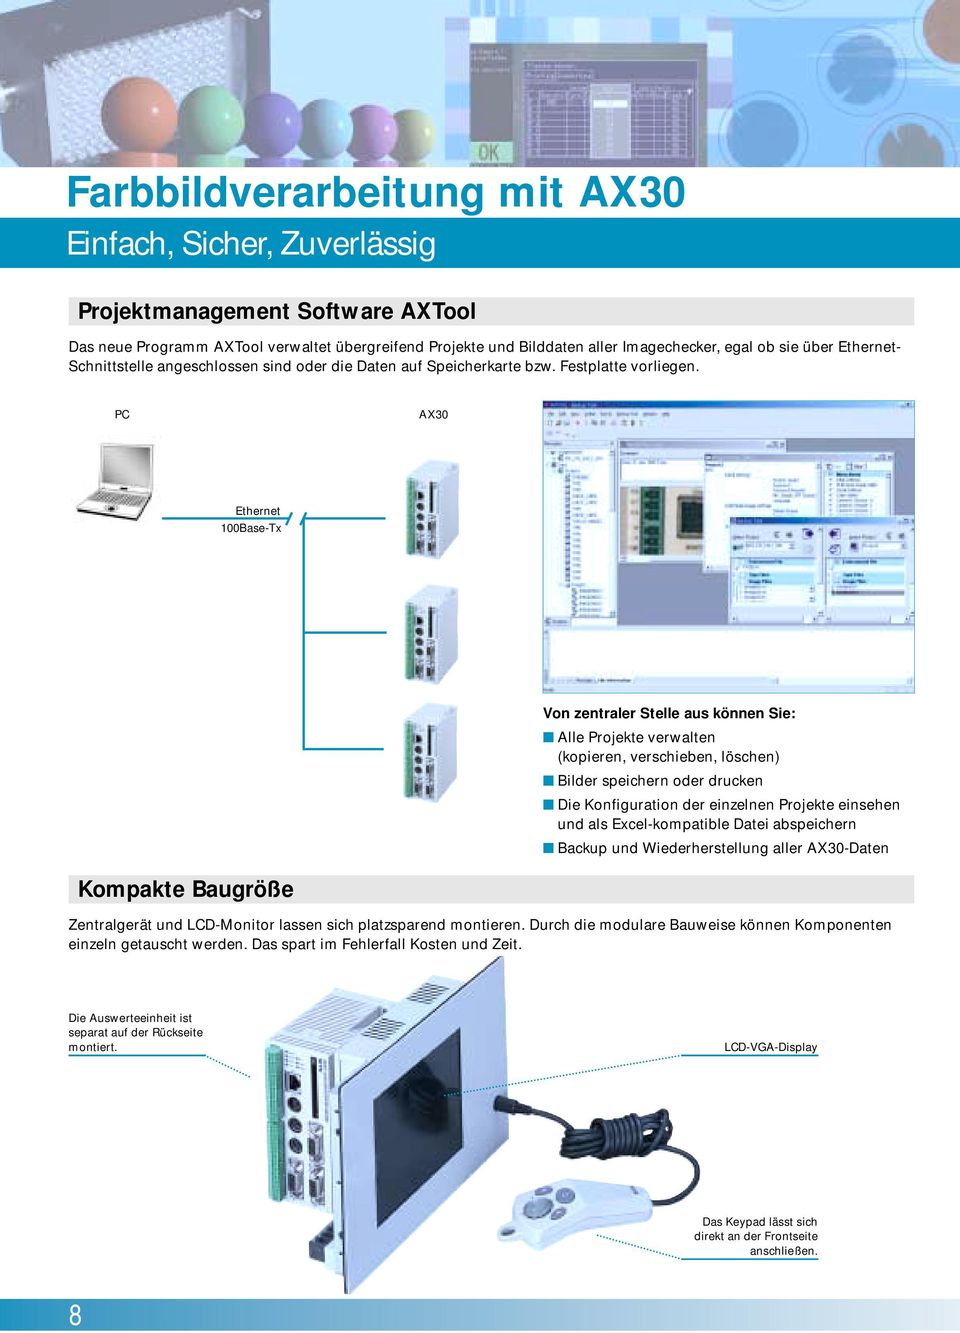 PC AX30 Ethernet 100Base-Tx Von zentraler Stelle aus können Sie: Alle Projekte verwalten (kopieren, verschieben, löschen) Bilder speichern oder drucken Die Konfiguration der einzelnen Projekte